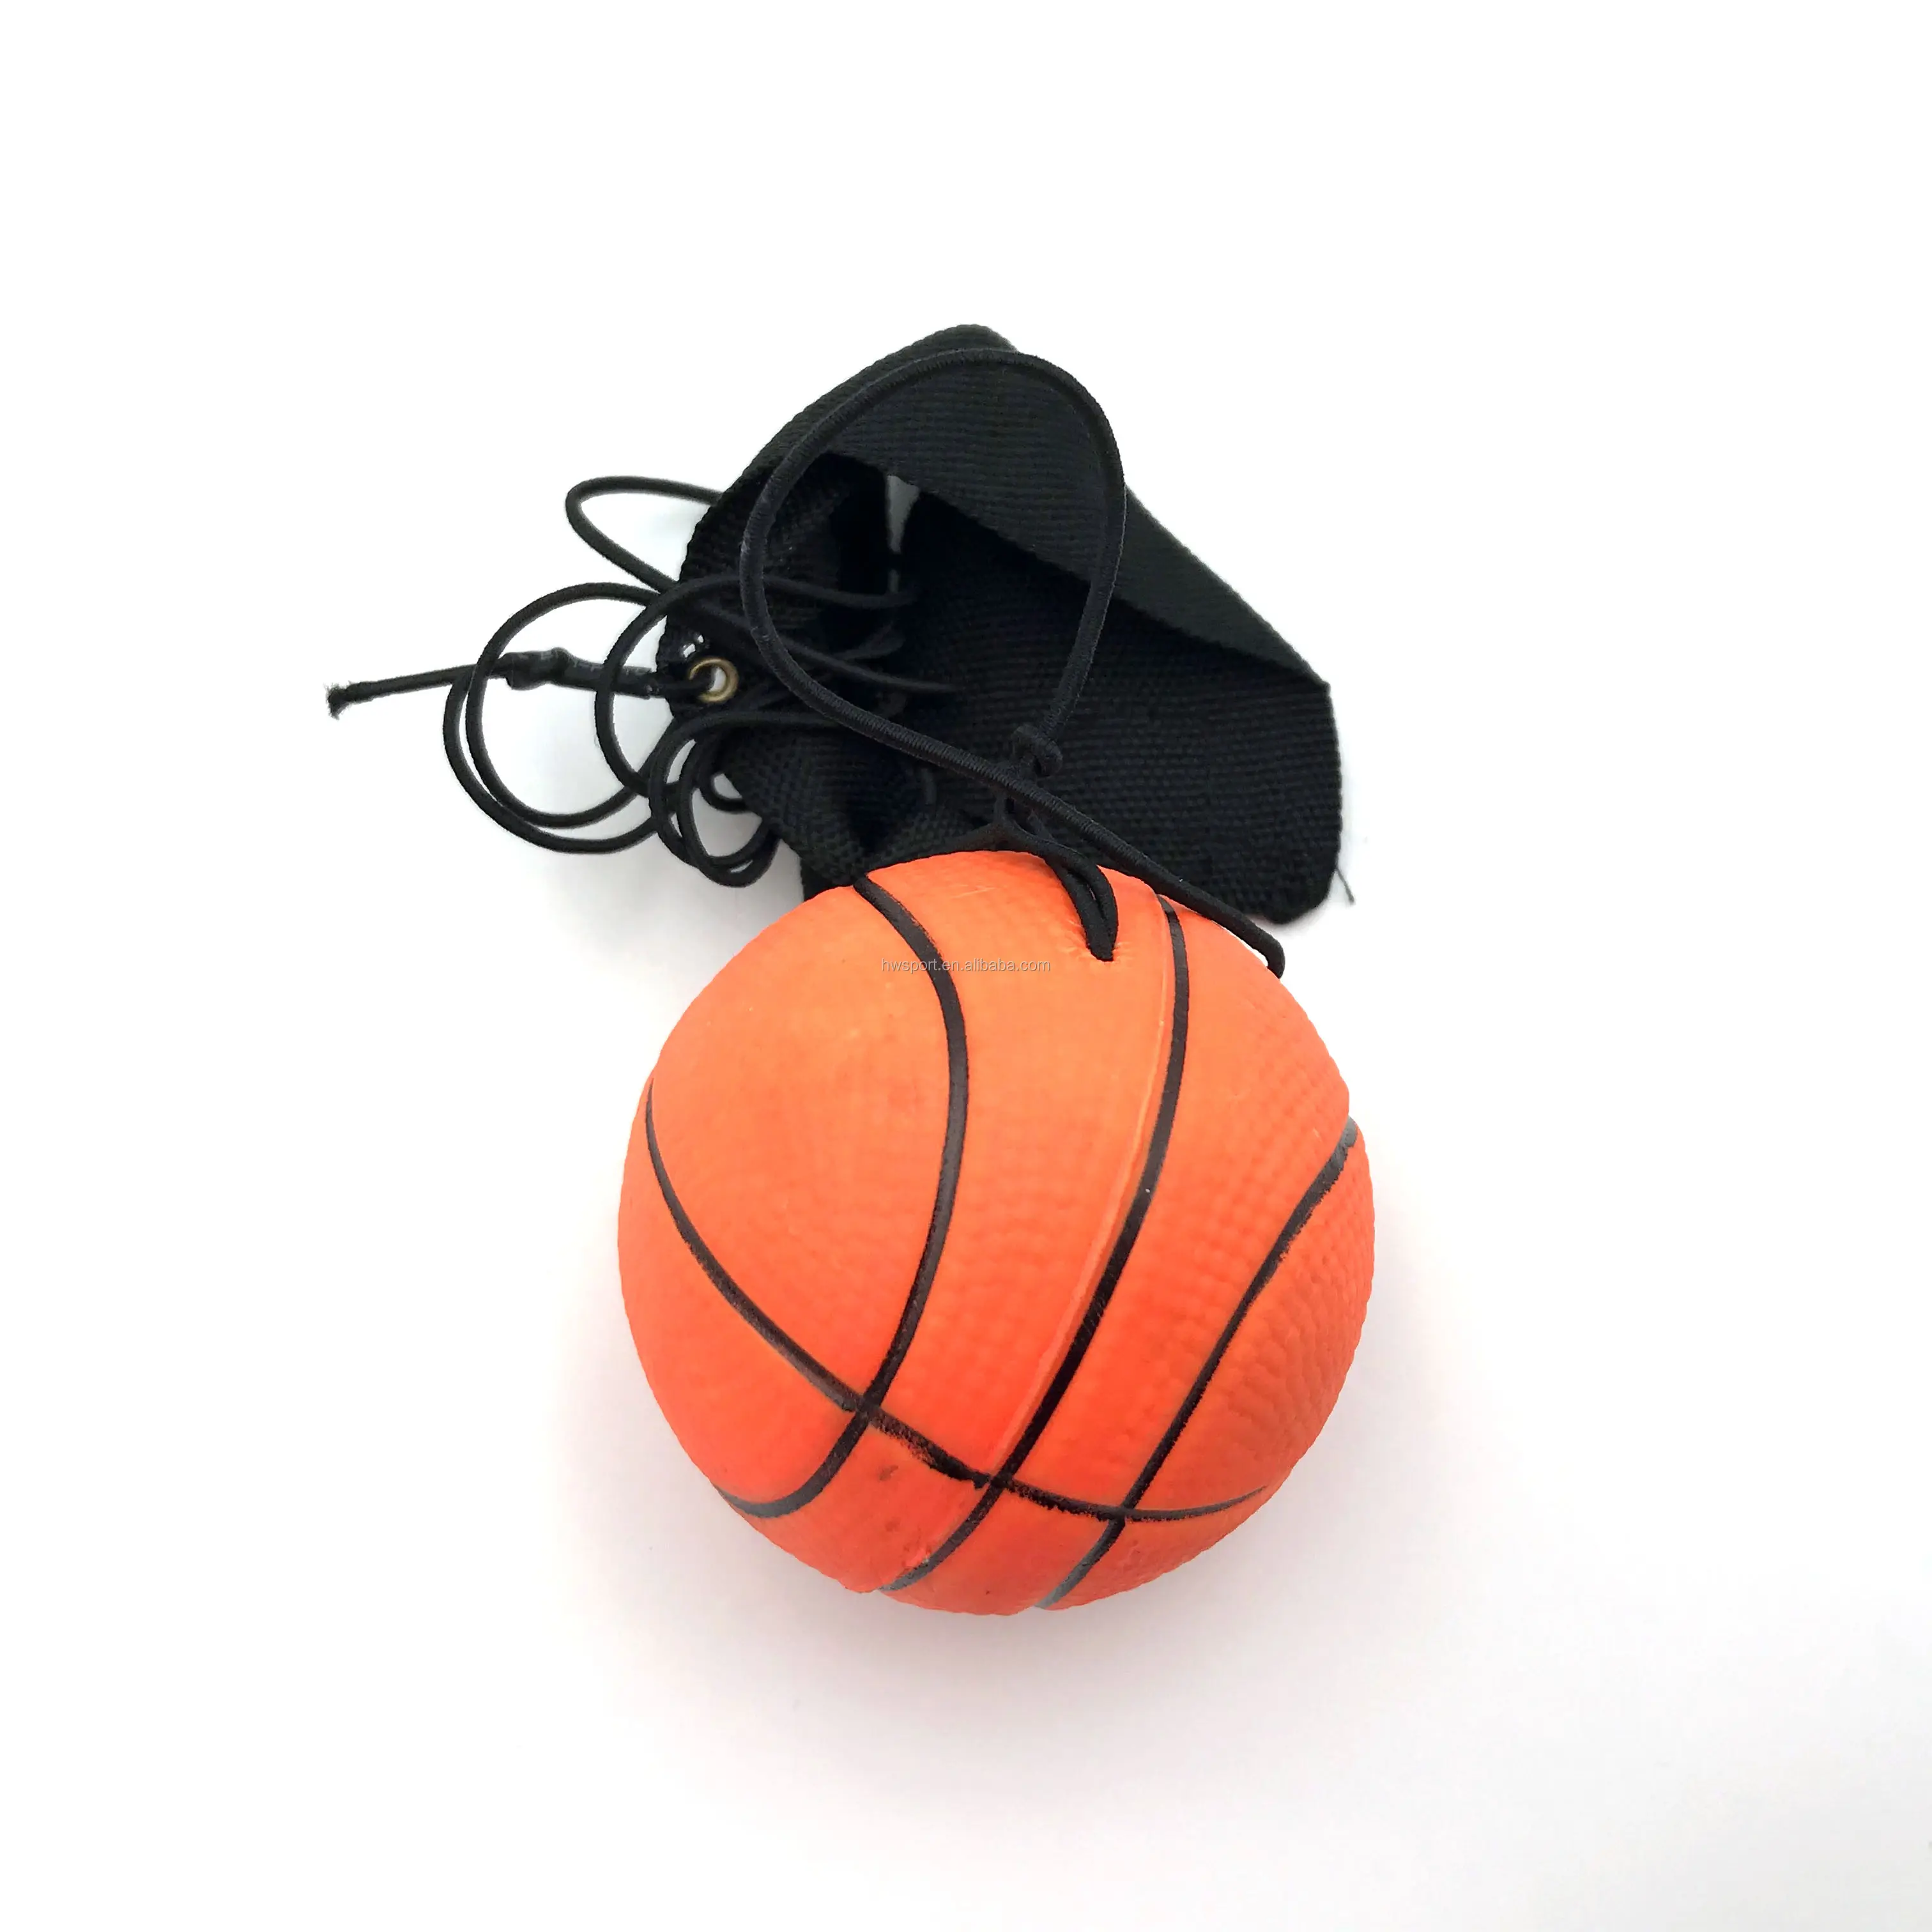 Новый дизайн, прыгающий шар со шнурком, детская игрушка, надувной резиновый шар, Рекламные высококачественные баскетбольные резиновые игрушки